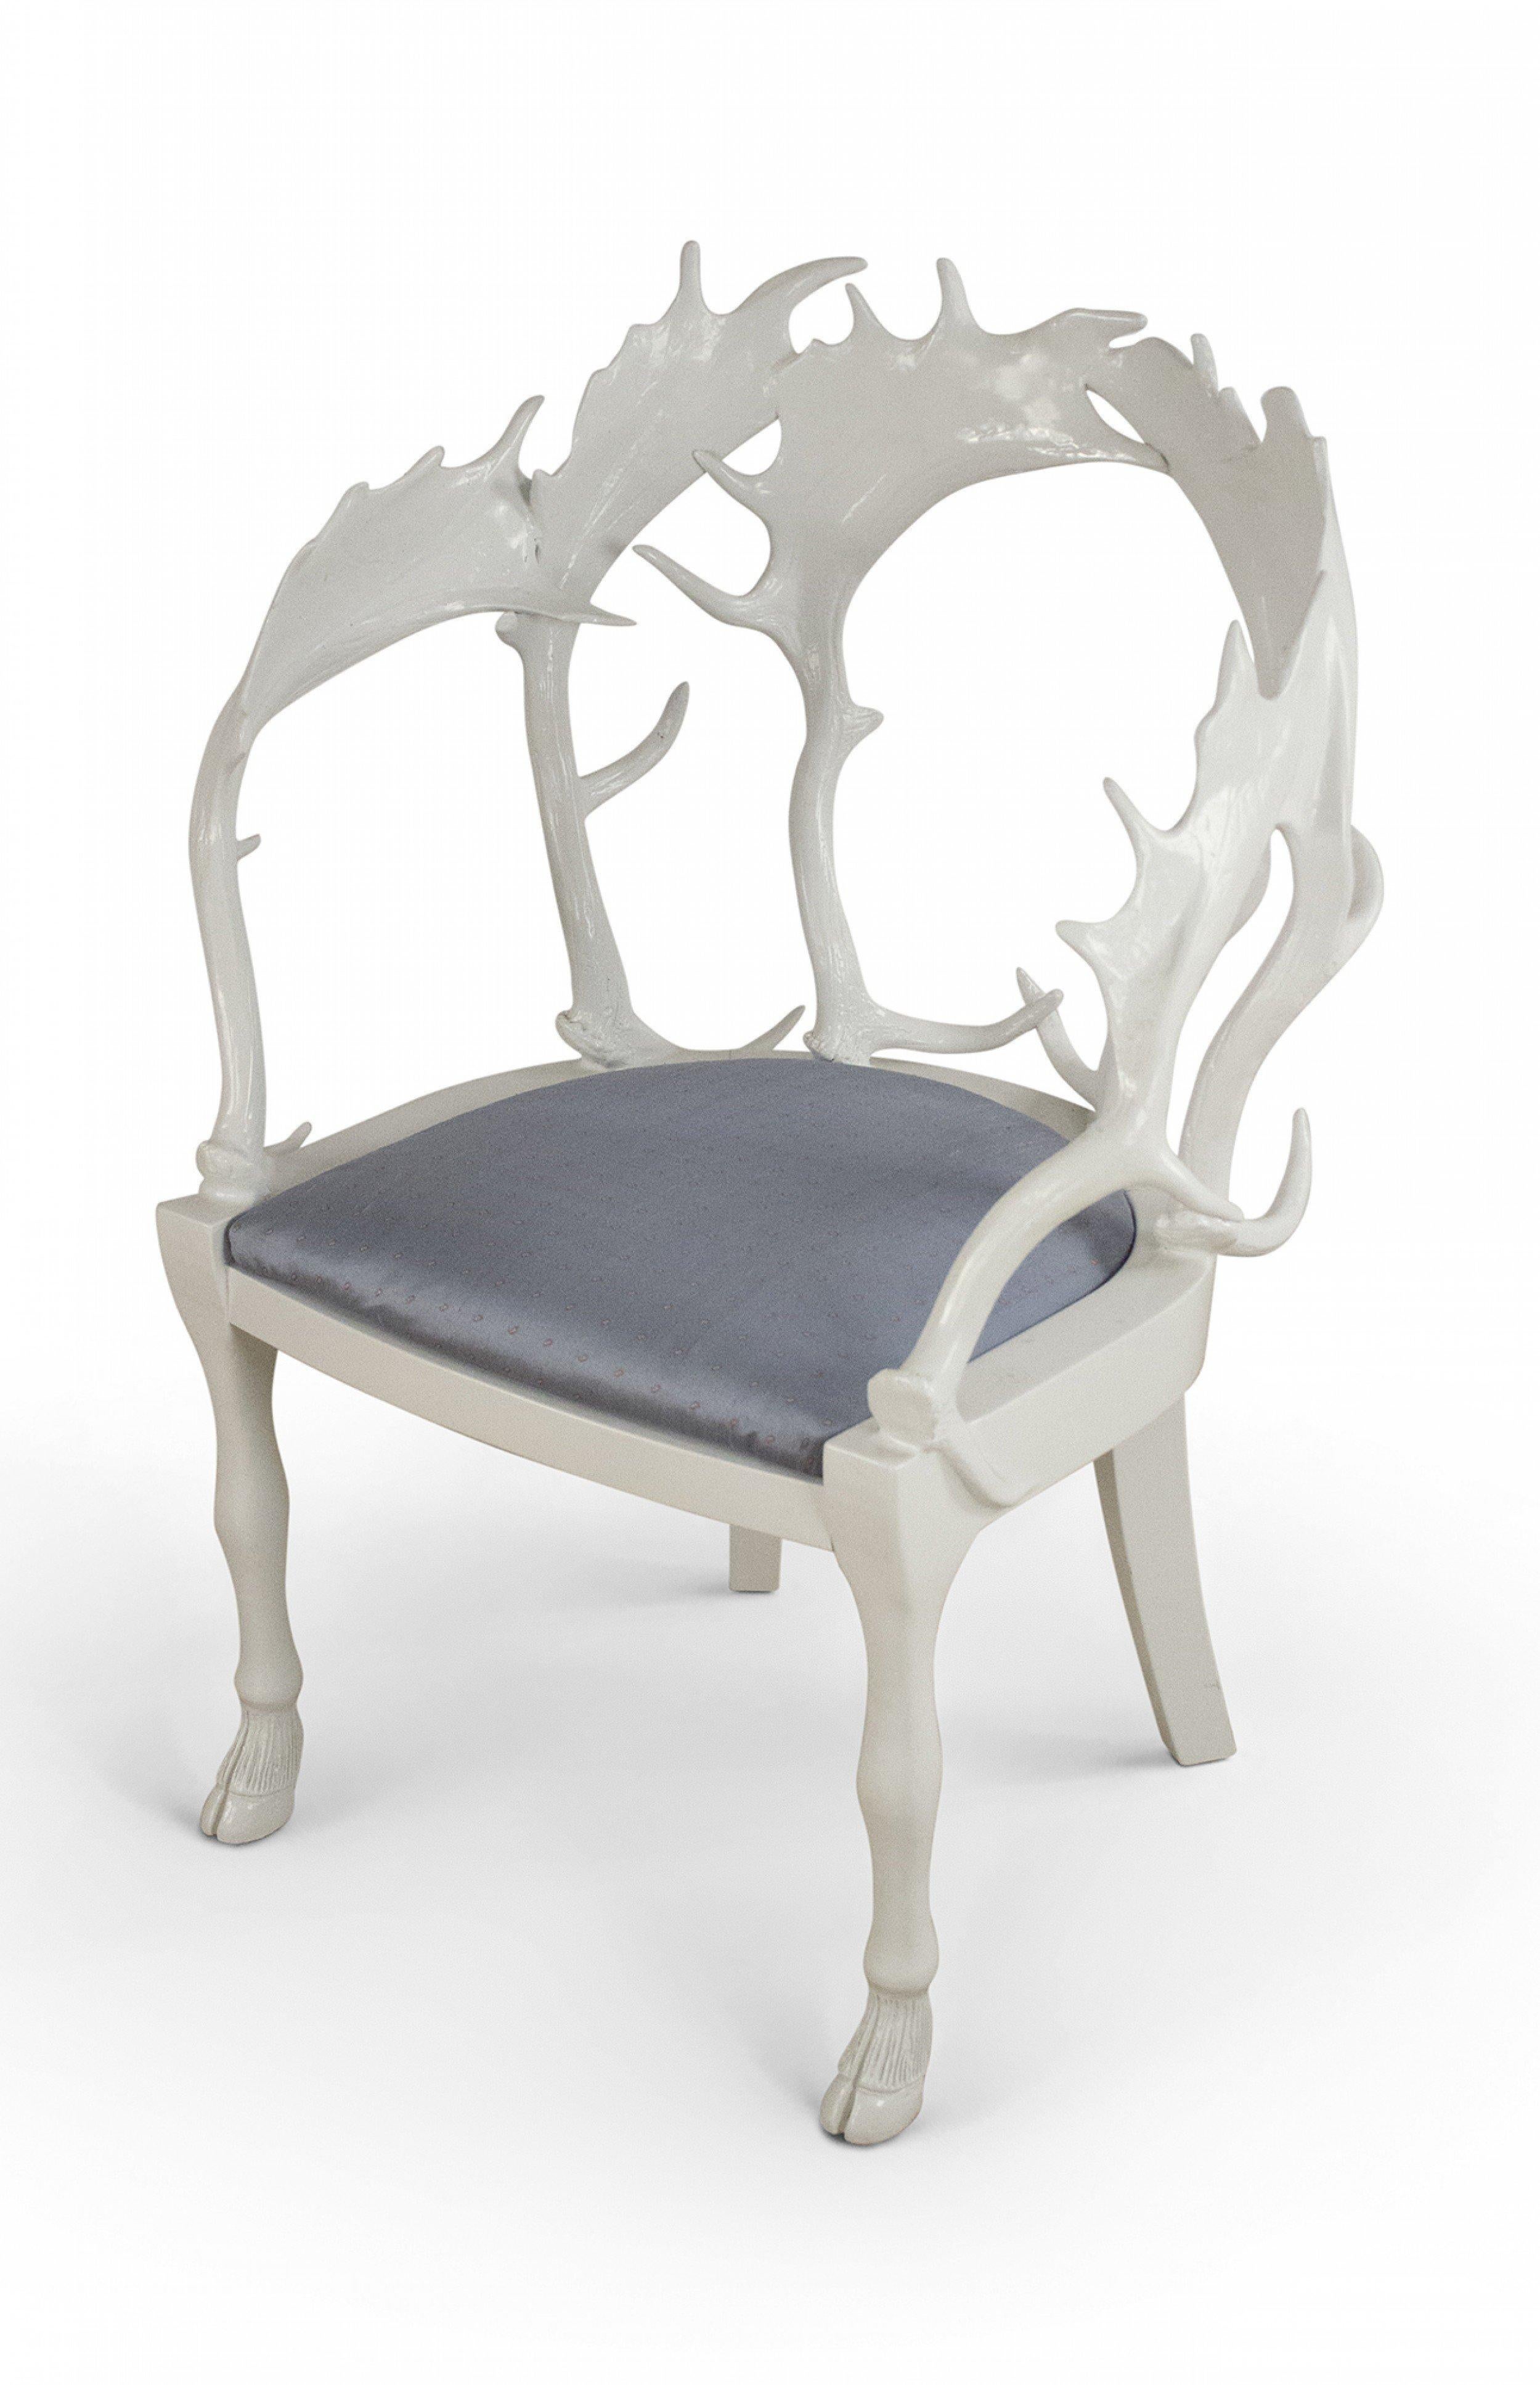 Ensemble de 4 chaises anthropomorphes postmodernes (circa 1980) en résine et bois laqué blanc fantaisie avec dossier en forme de corne et pieds en forme de sabots avec coussin d'assise rembourré bleu (J. Anthony Redmile, Fallow Horn).